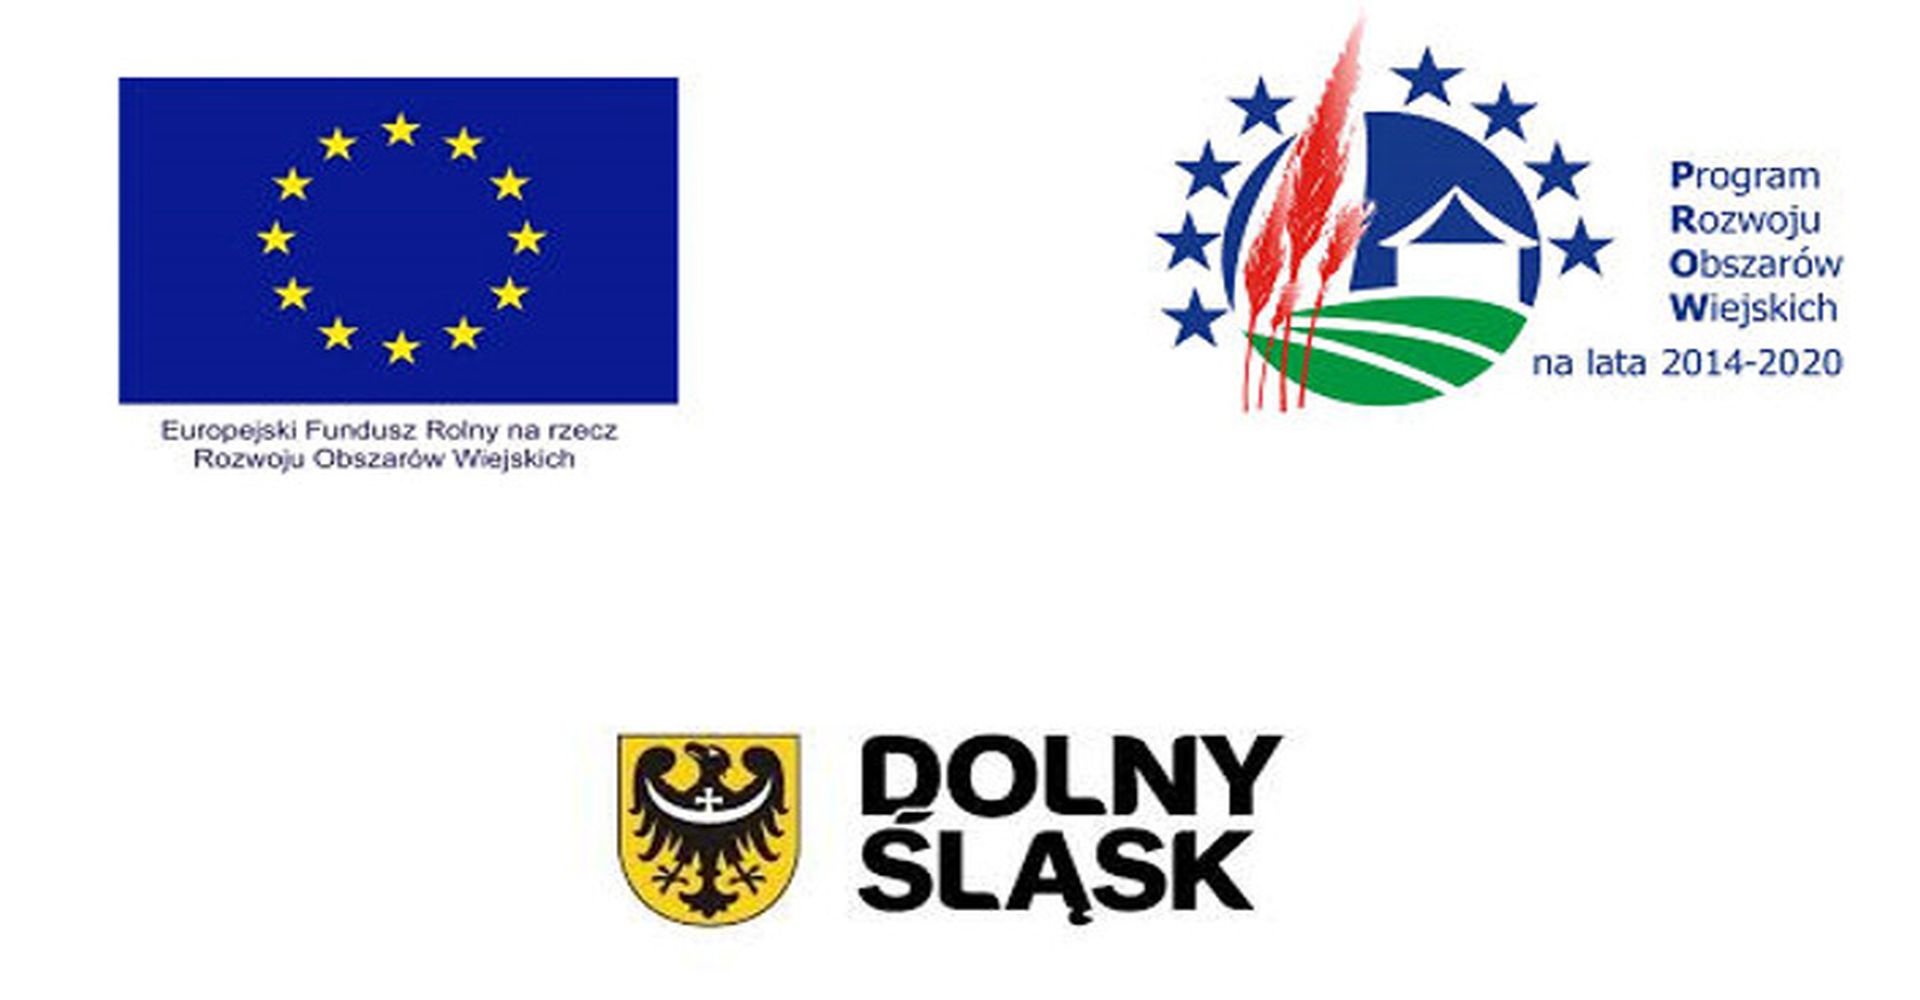 logo europejski fundusz rolny na rzecz rozwoju obszarów wiejskich, logo program rozwoju obszarów wiejskich na lata 2014-2020, logo dolny śląsk